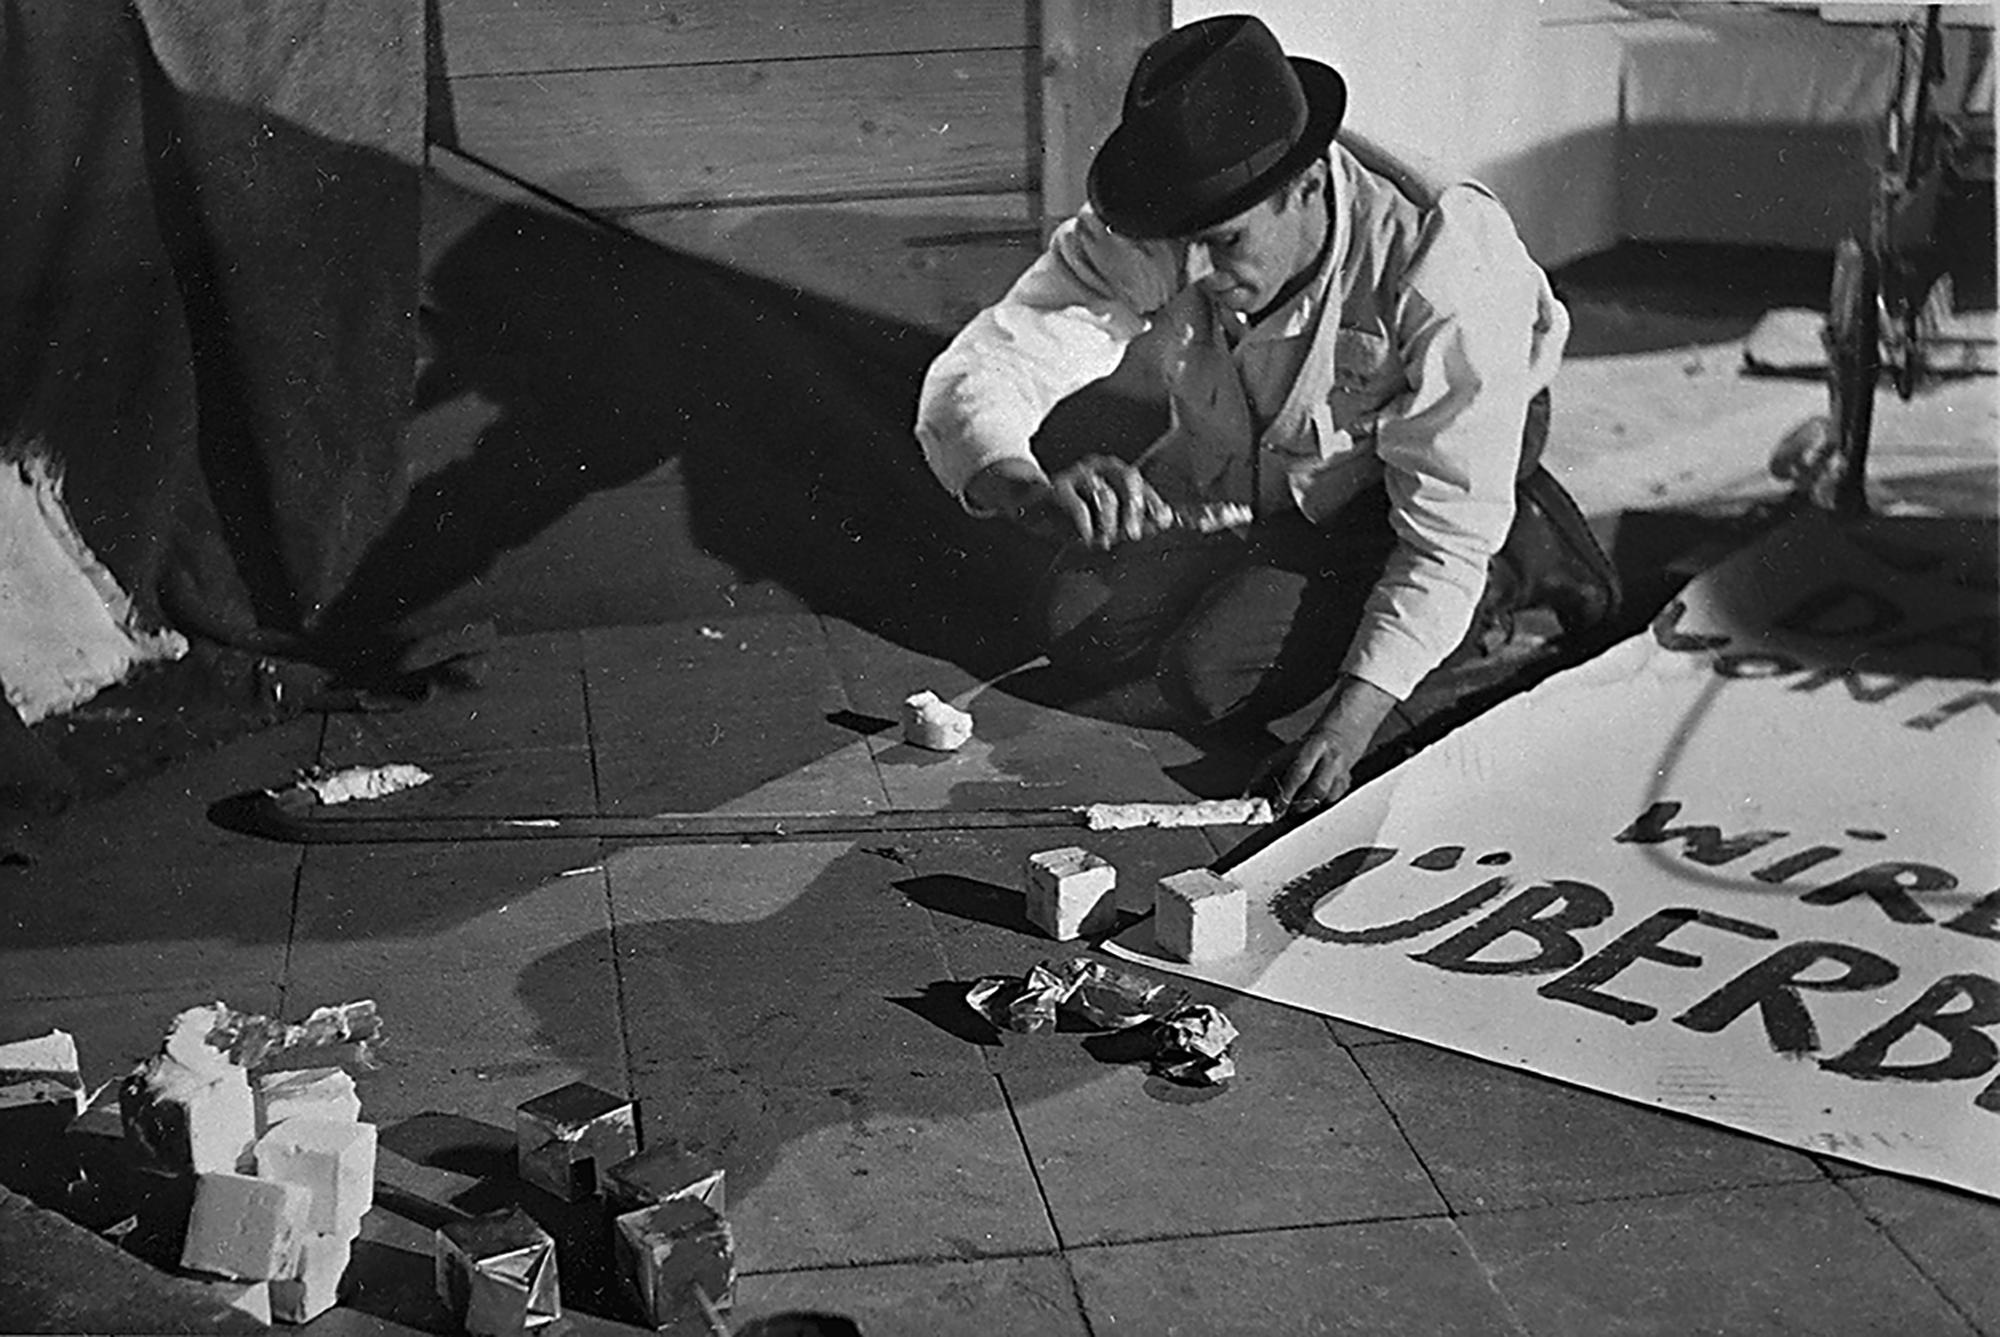 Joseph Beuys »Das Schweigen von Marcel Duchamp wird überwertet« (1964, Foto: Manfred Tischer © by tischer.org, the estate of Manfred Tischer)